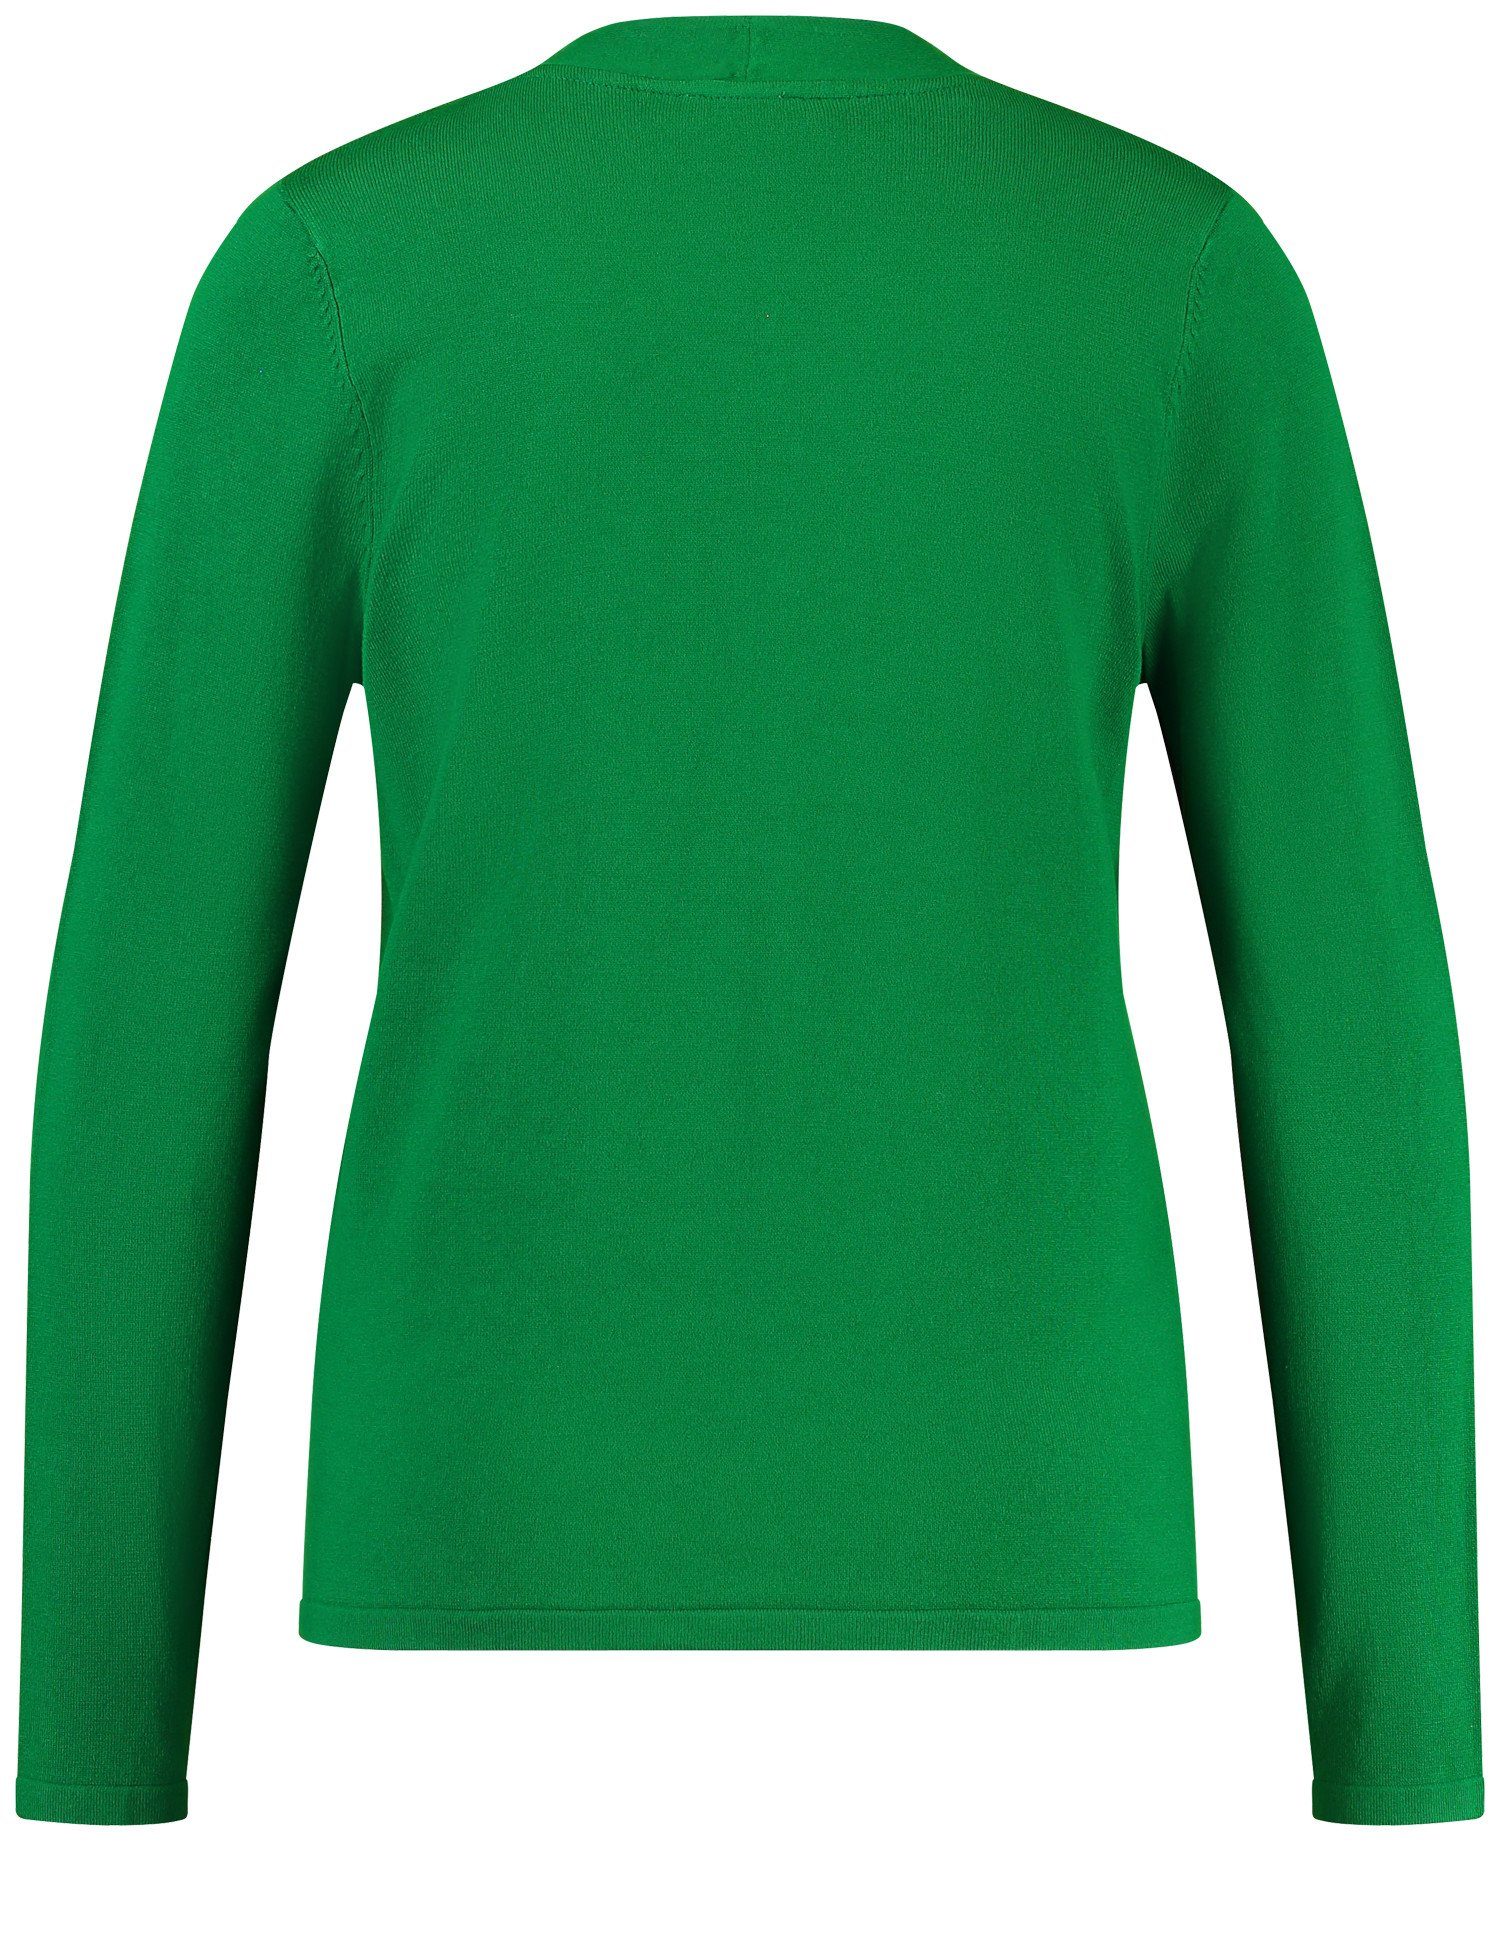 Bright WEBER GERRY Pullover mit aus V-Ausschnitt Green Rundhalspullover Feinstrick